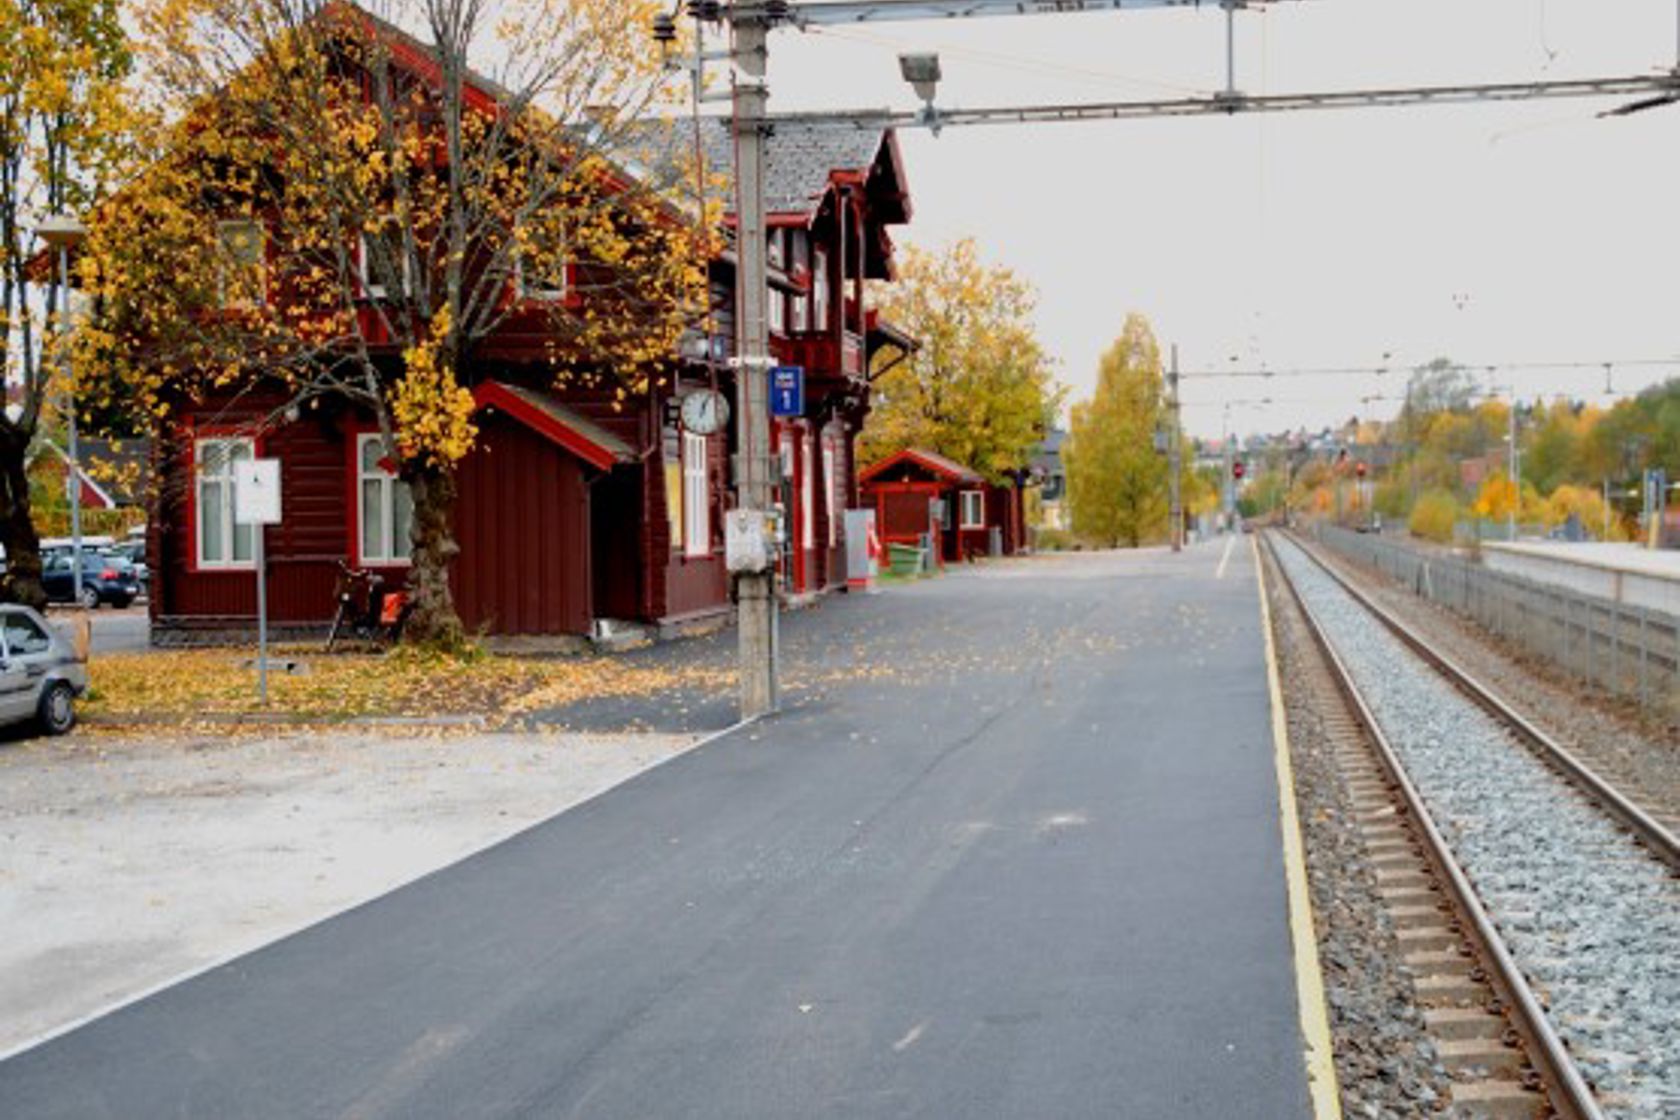 Exterior view of Kjelsås station